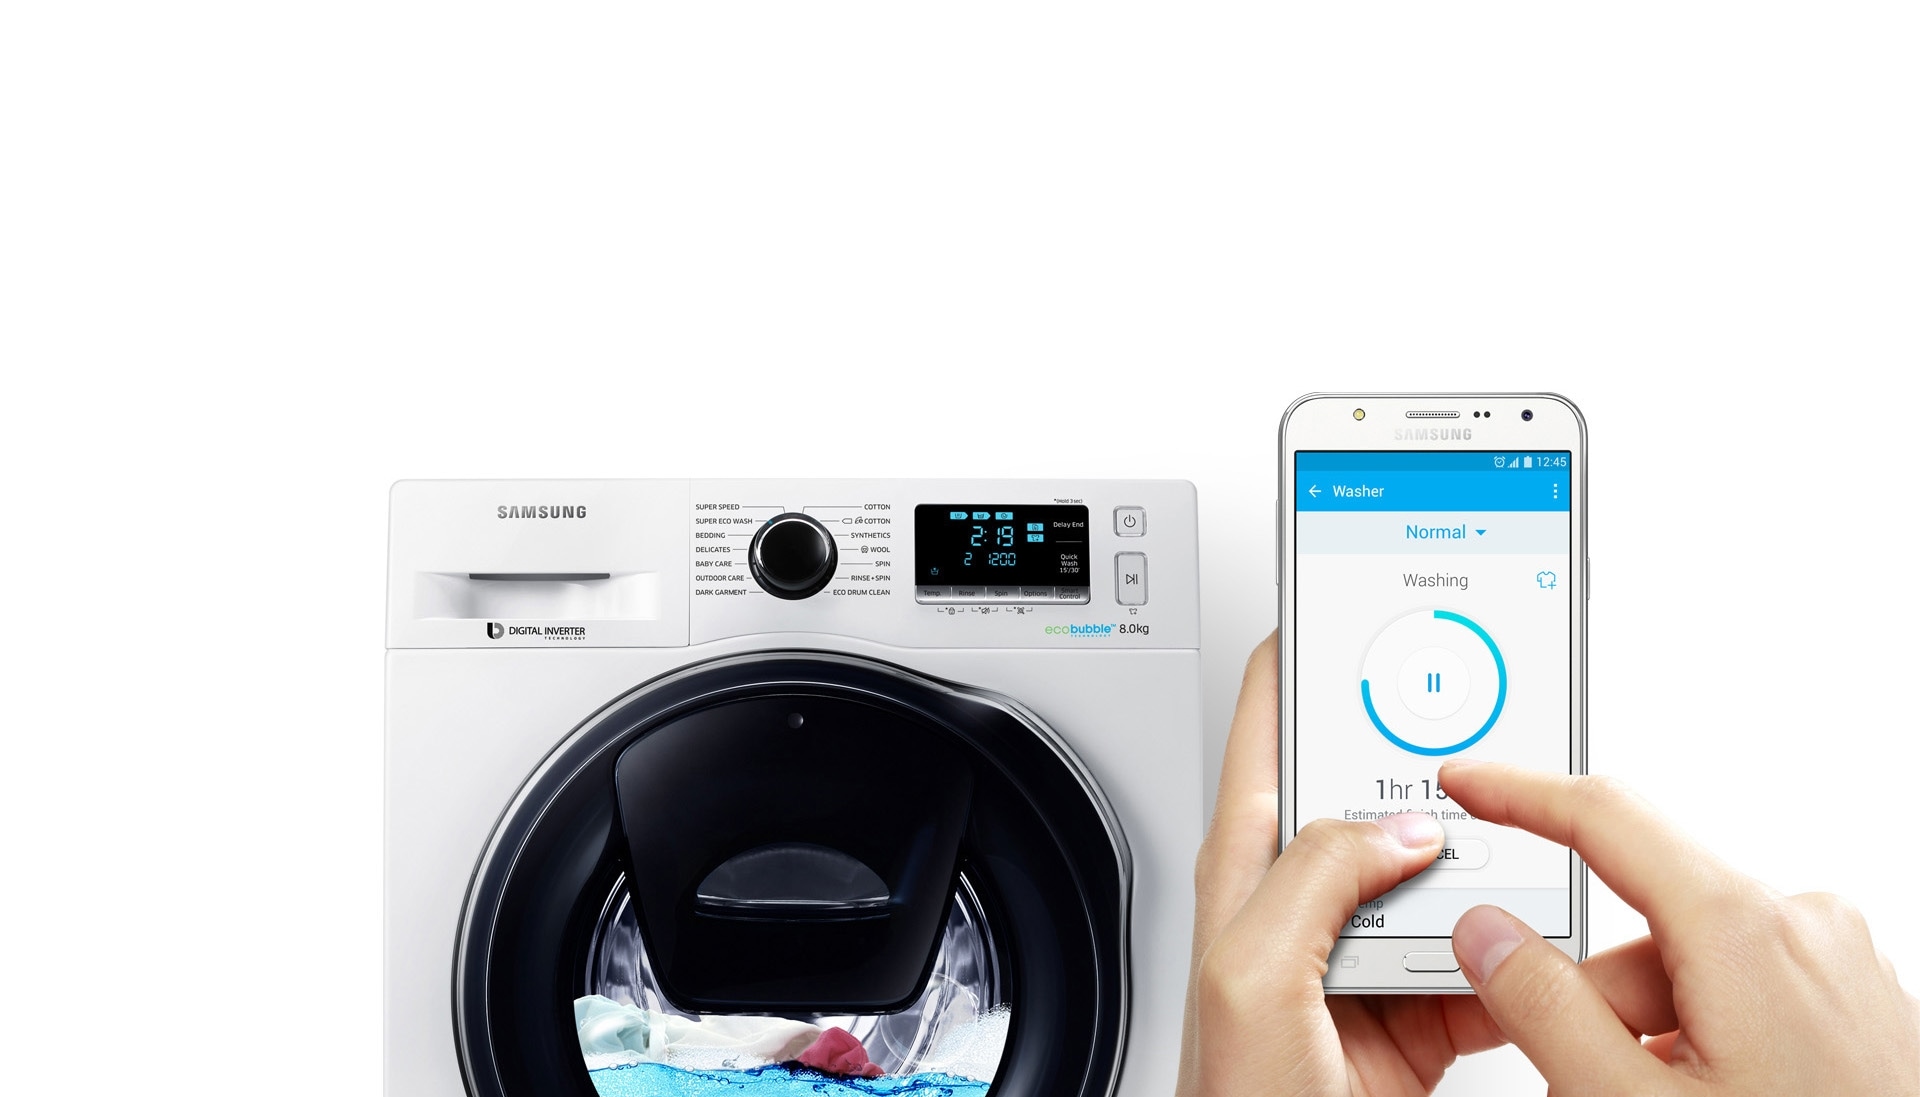 Immagine che mostra l'utente mentre arresta la lavatrice WW6500 a metà del ciclo di lavaggio utilizzando la funzione SMART CONTROL dallo smartphone.